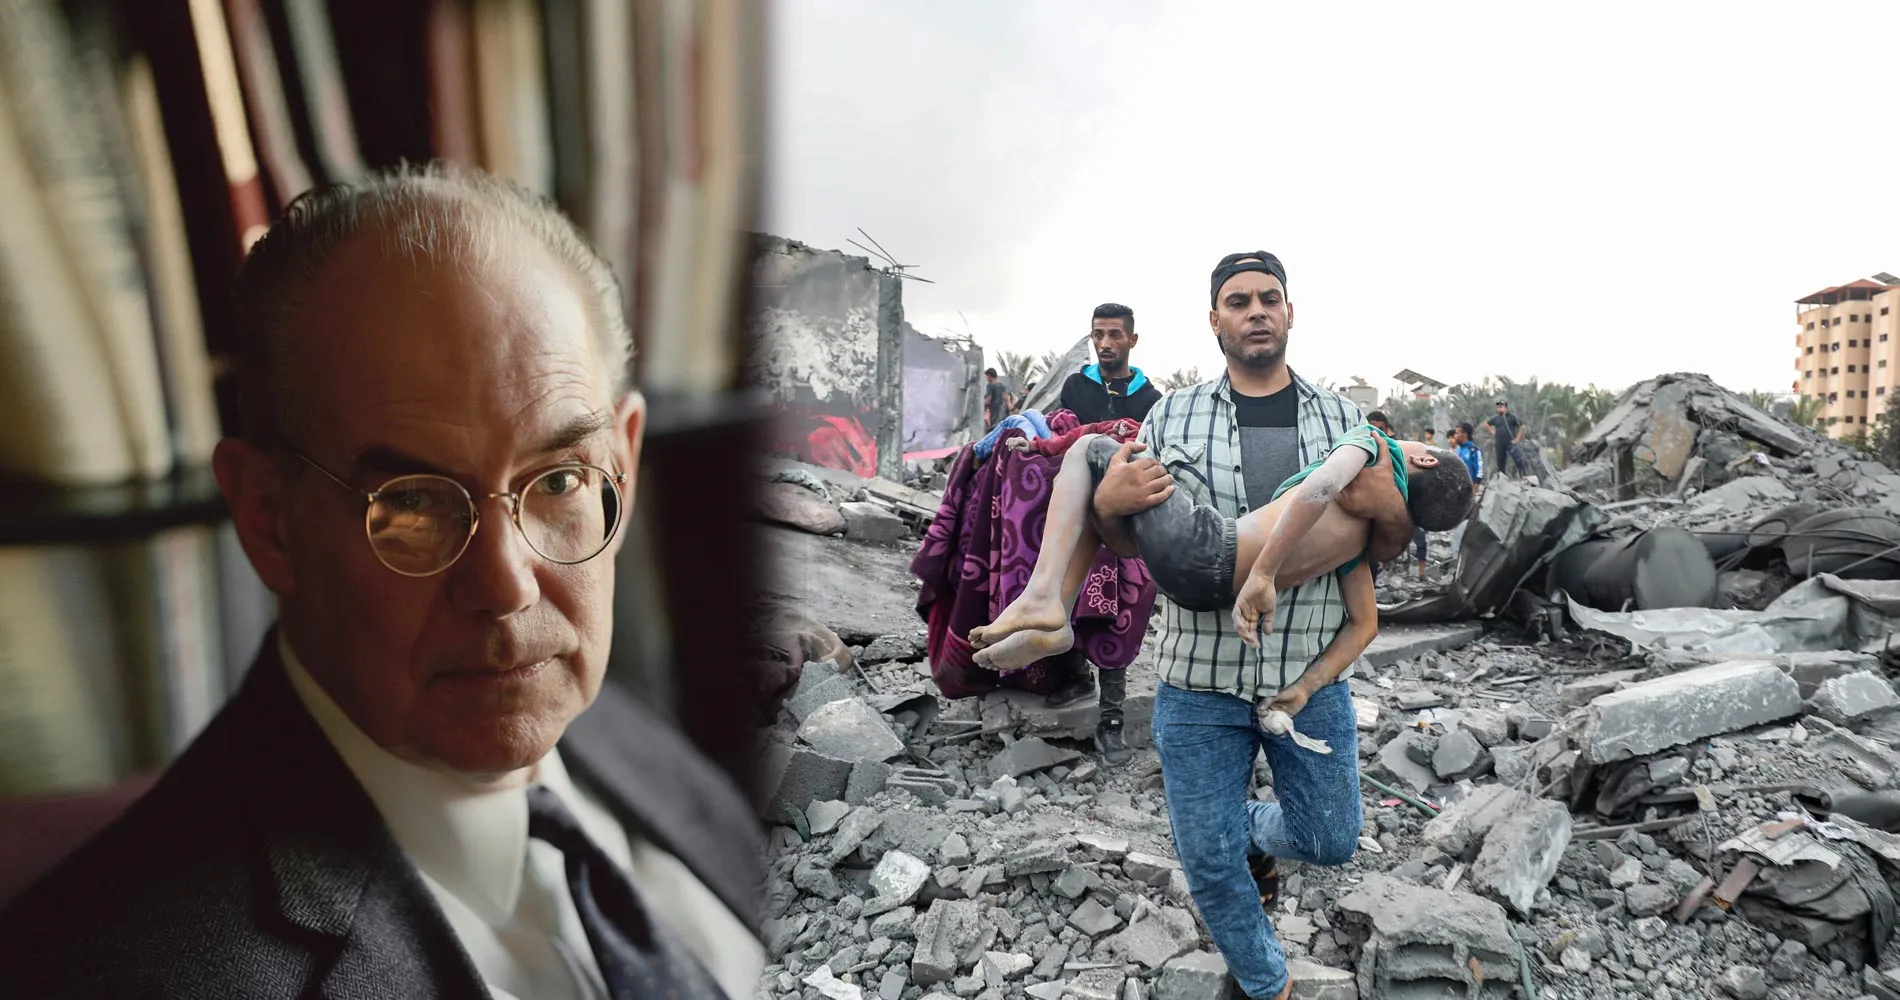 Профессор Джон Миршаймер о Геноциде в Газе